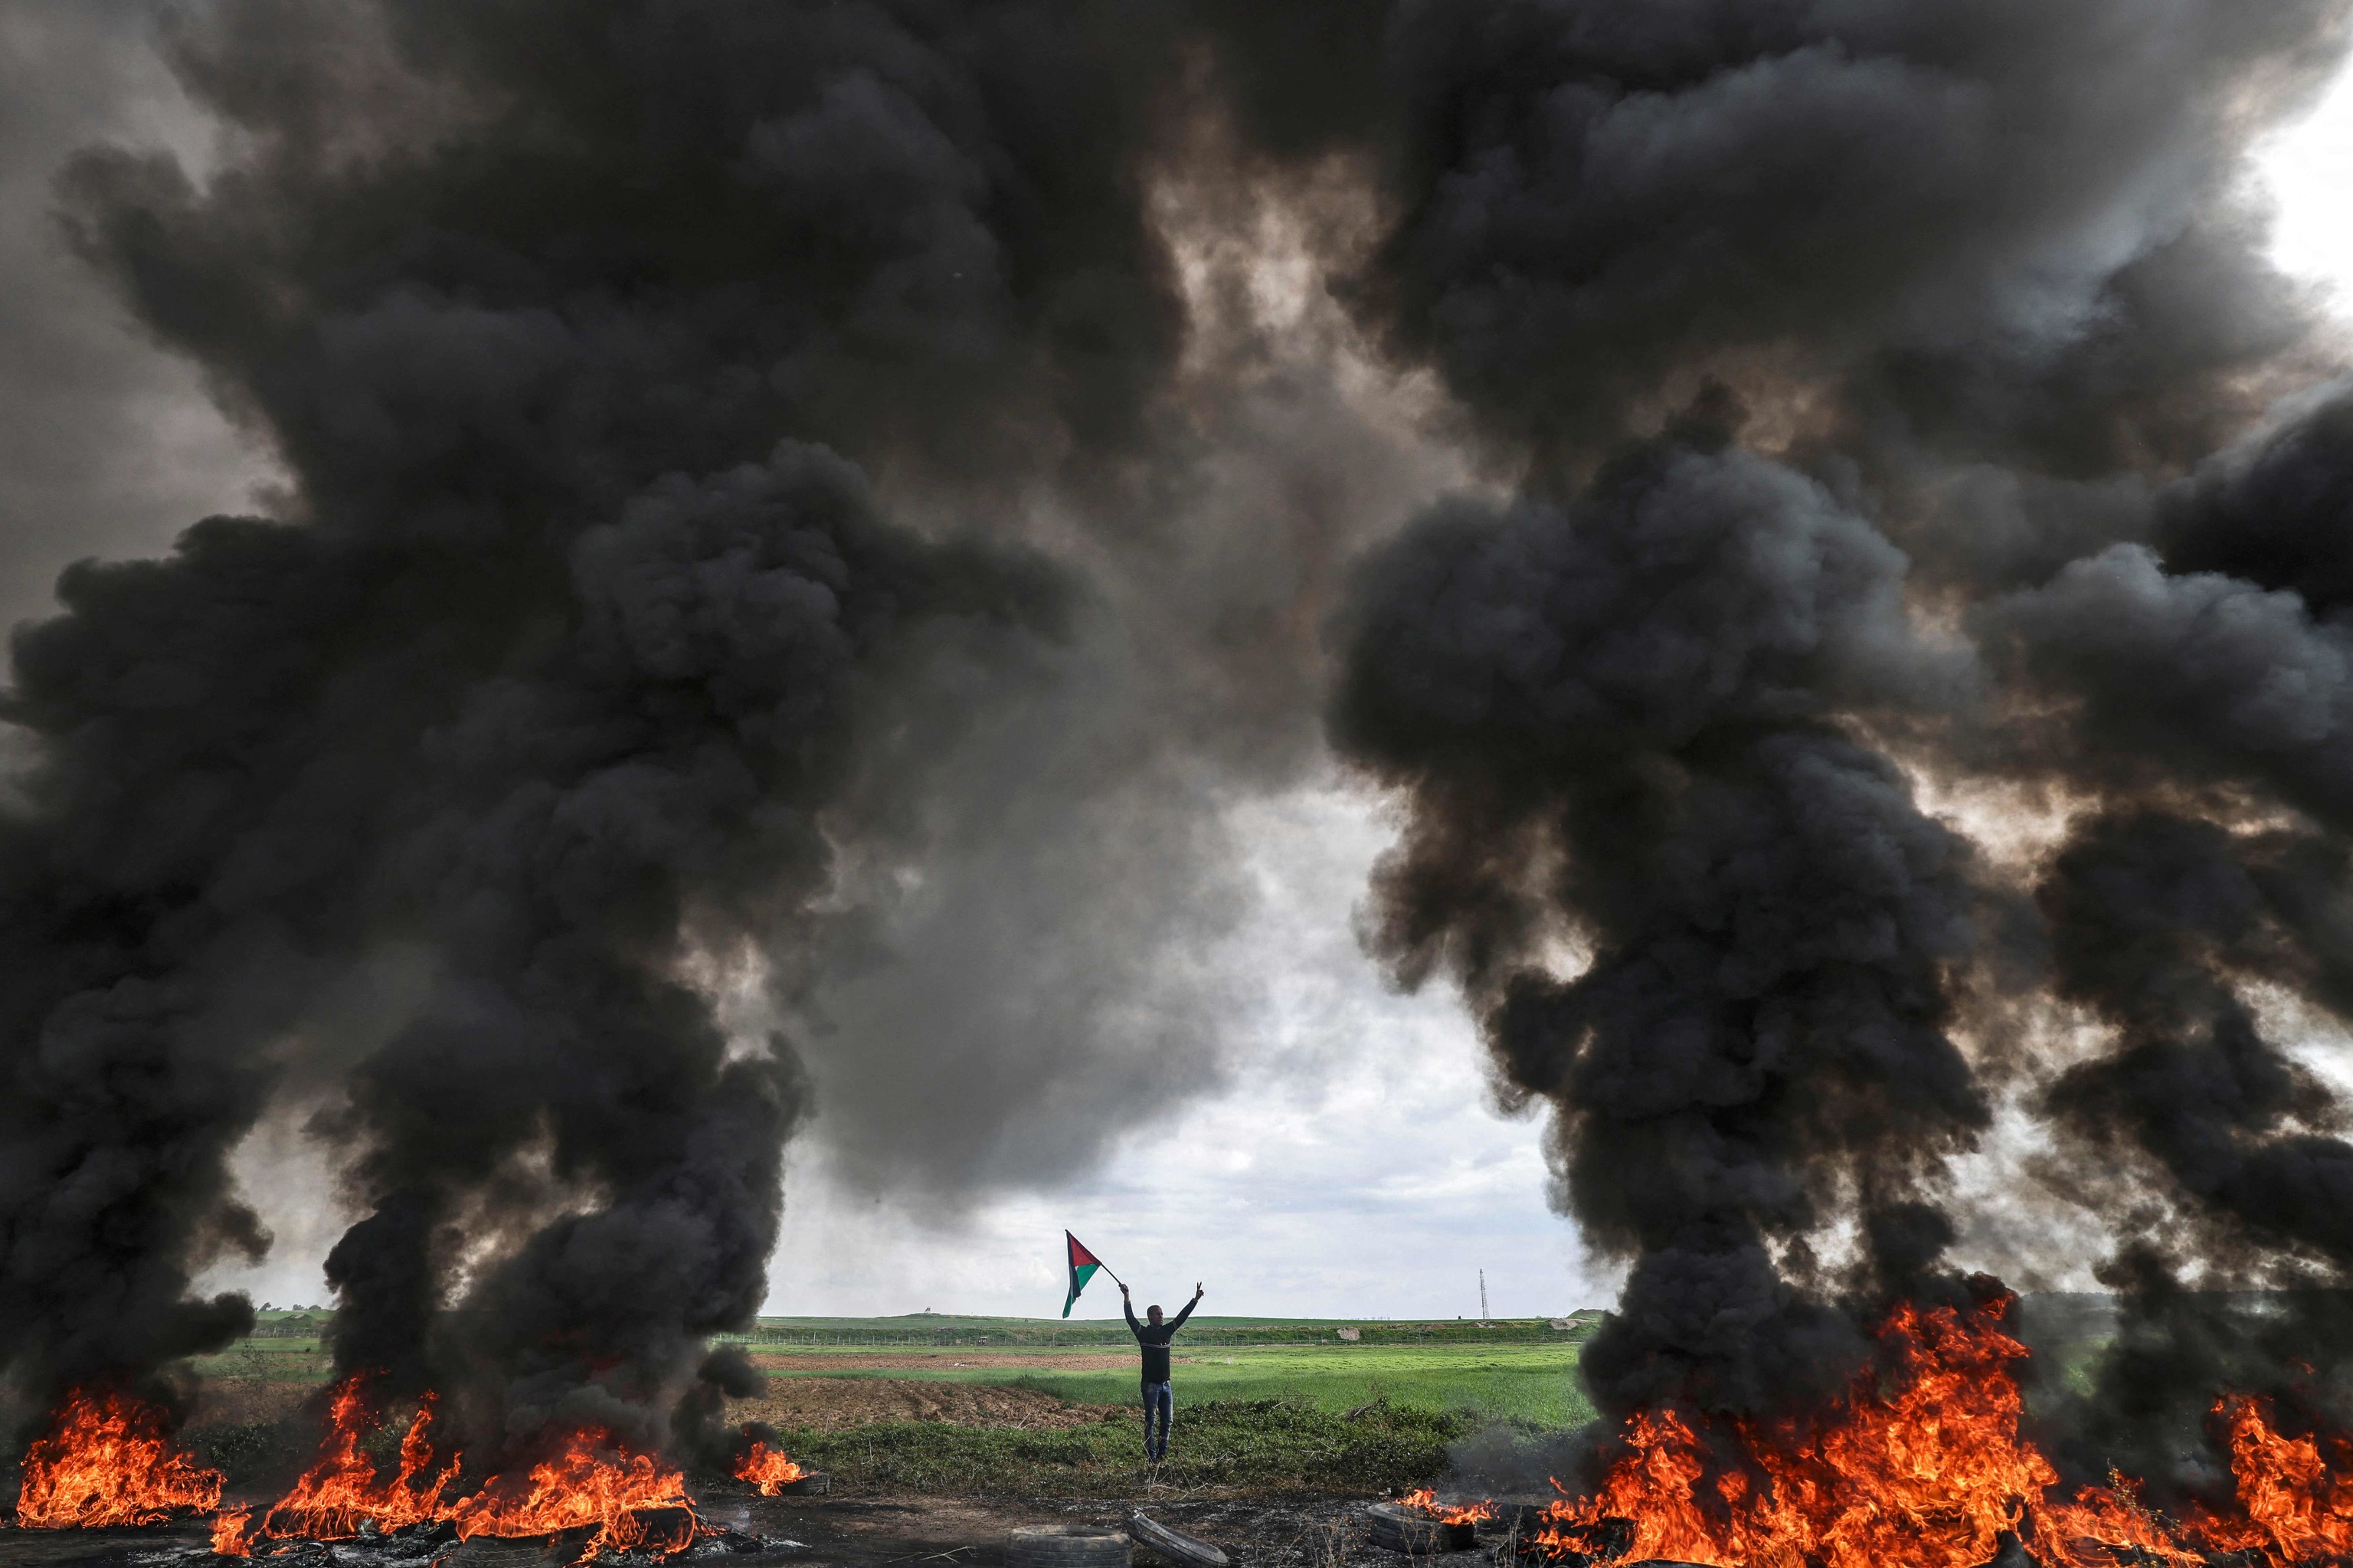 Jvenes palestinos queman neumticos en una protesta en la frontera de Gaza.